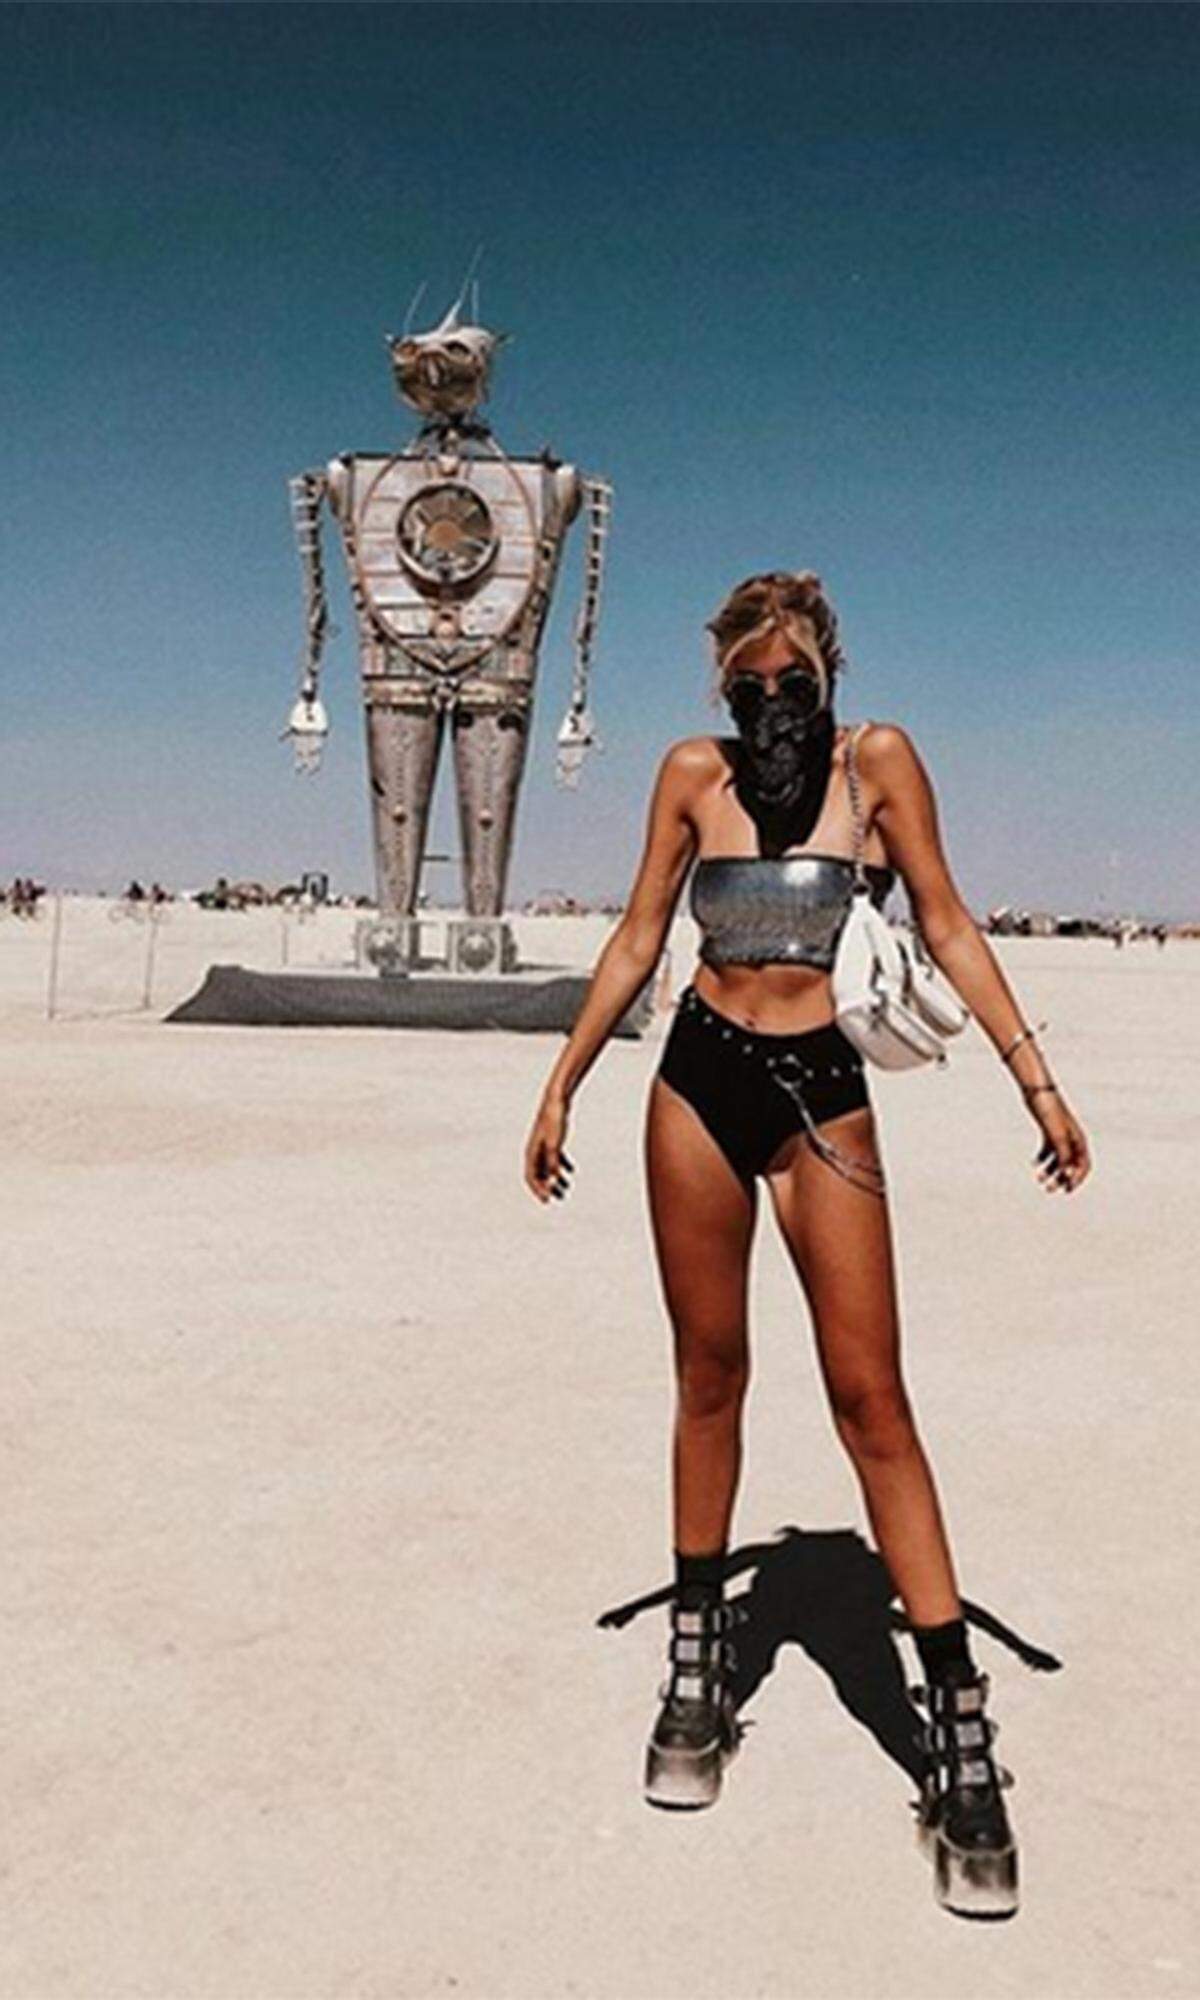 Das heurige Styling-Motto „I-Robot“ dürfte Influencerin Xenia Overdose zu diesem knappen Outfit inspiriert haben: Metallic-Bandeau-Top, Hot-Pants (oder eher Bikinihose) und derbe Plateau-Boots mit Schnallen.